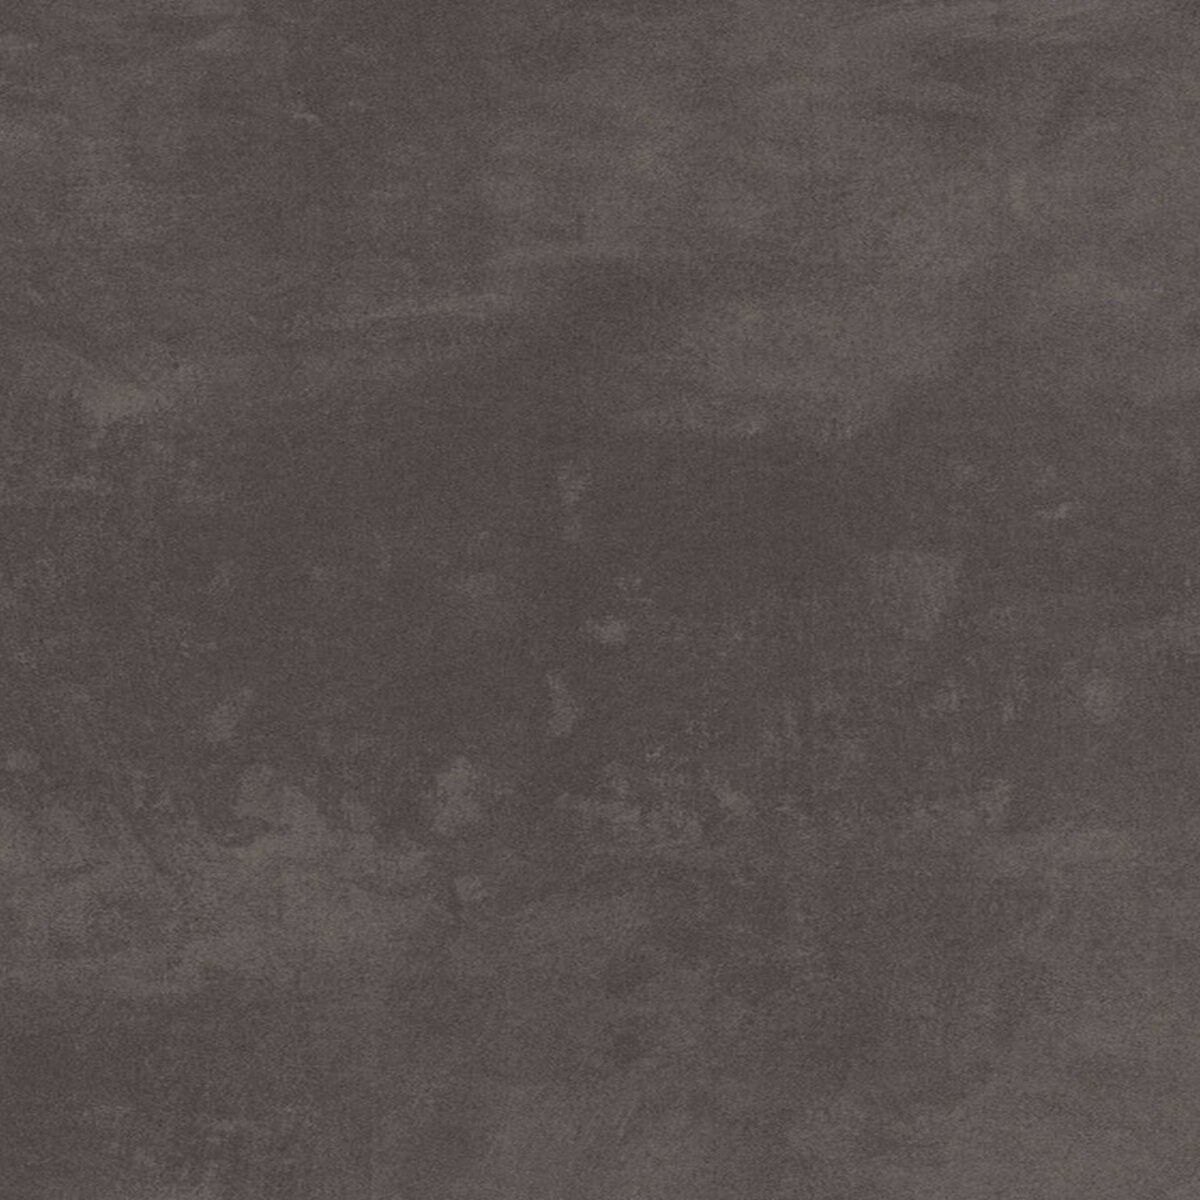 Fundermax 0027 Prado Agate Grey płyta zewnętrzna